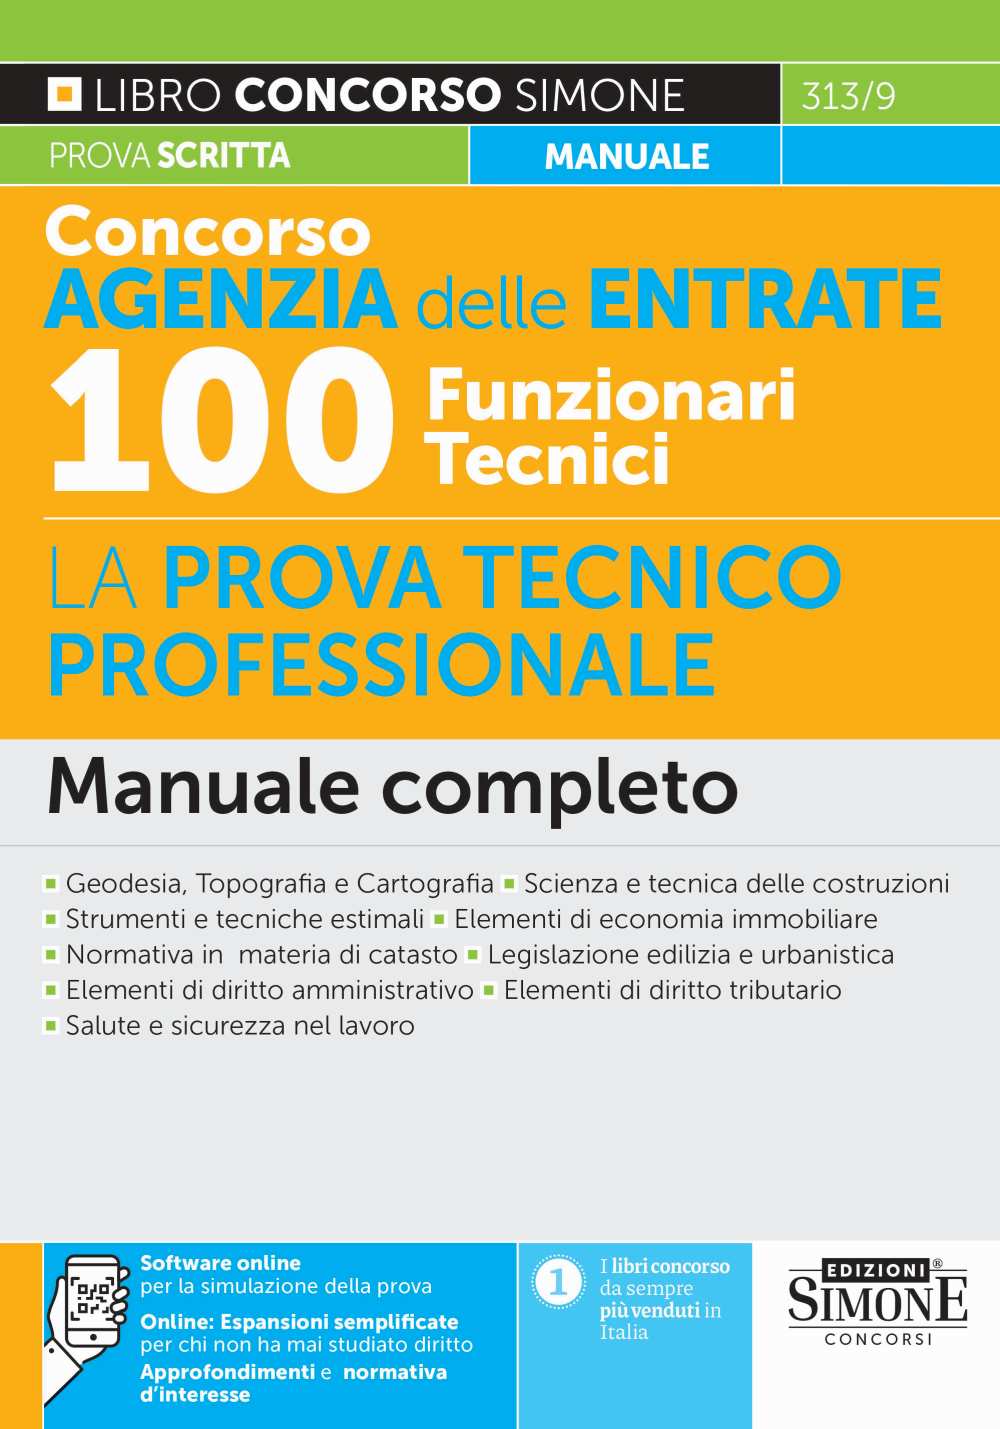 Concorso Agenzia delle Entrate 100 Funzionari Tecnici - La prova tecnico professionale - Manuale - 313/9